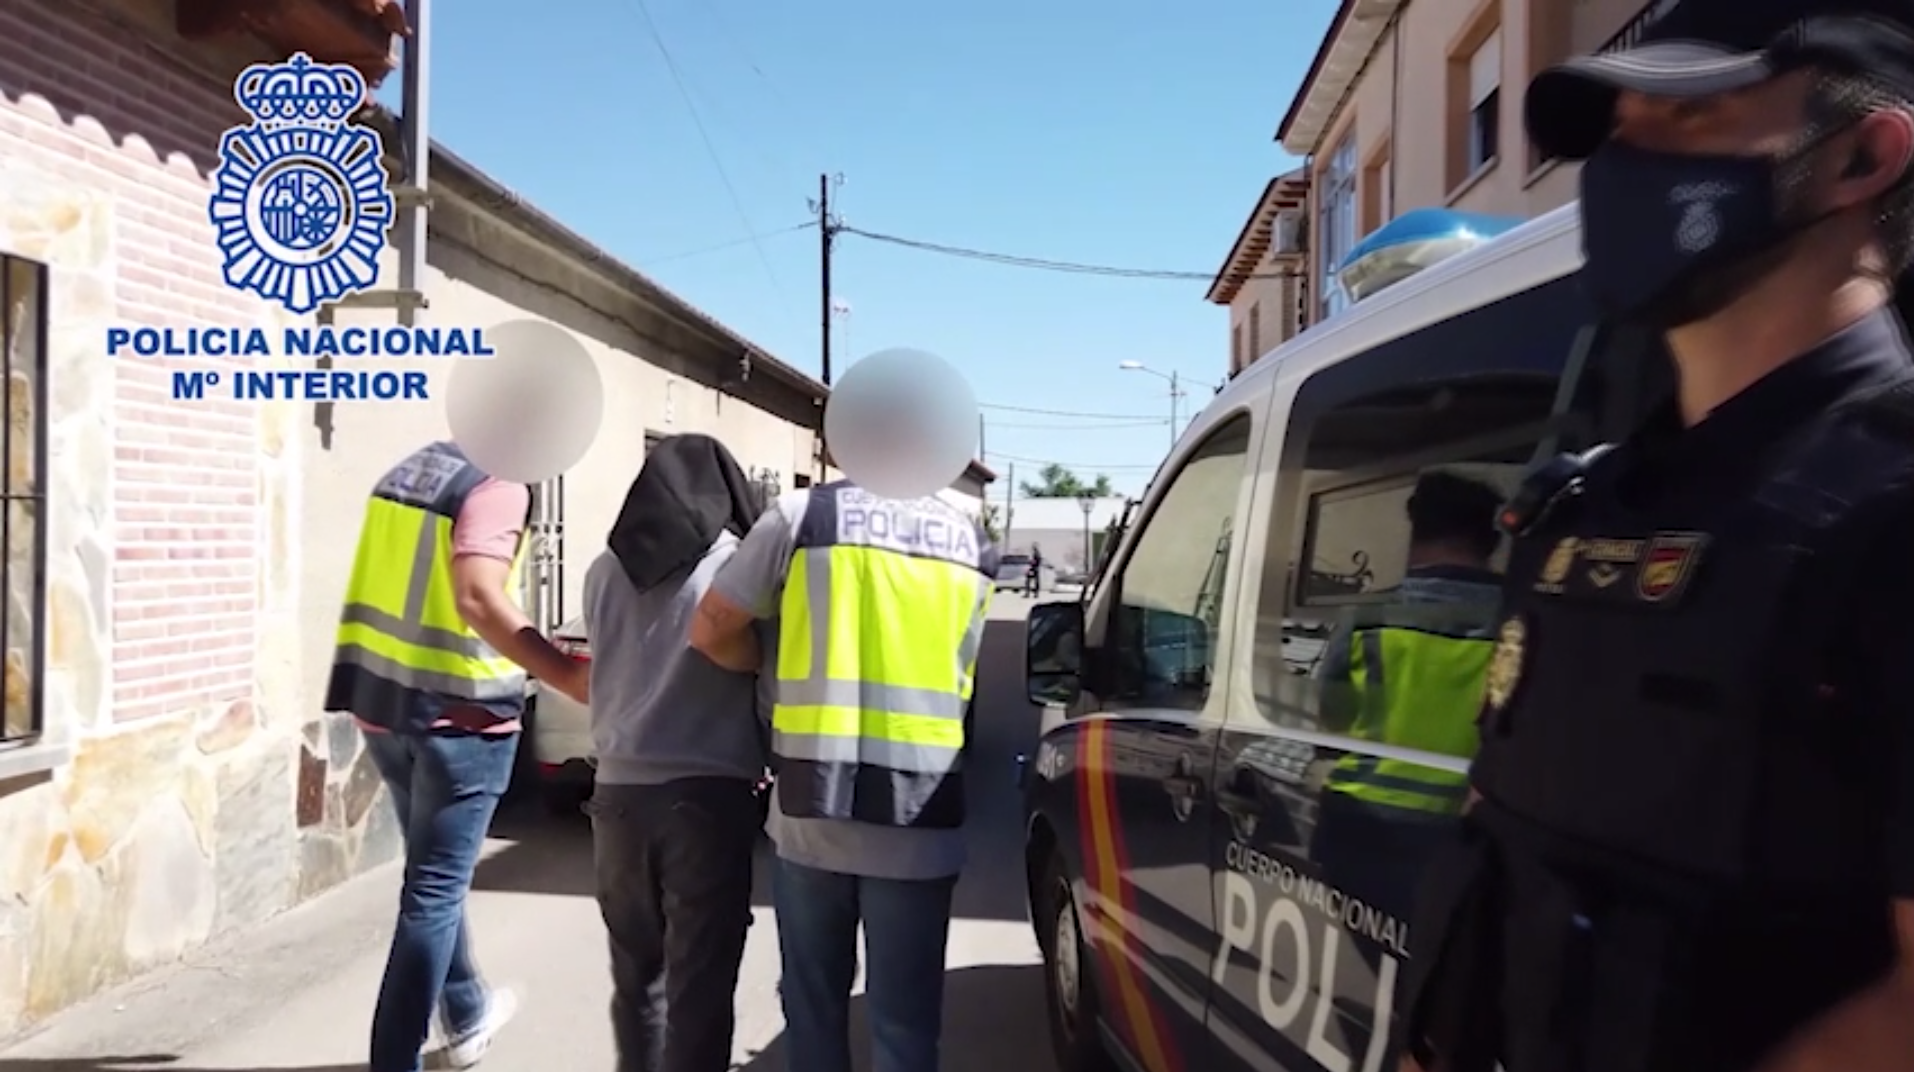 Momento en que la Policía detiene al acusado de yihadismo en Santa Olalla